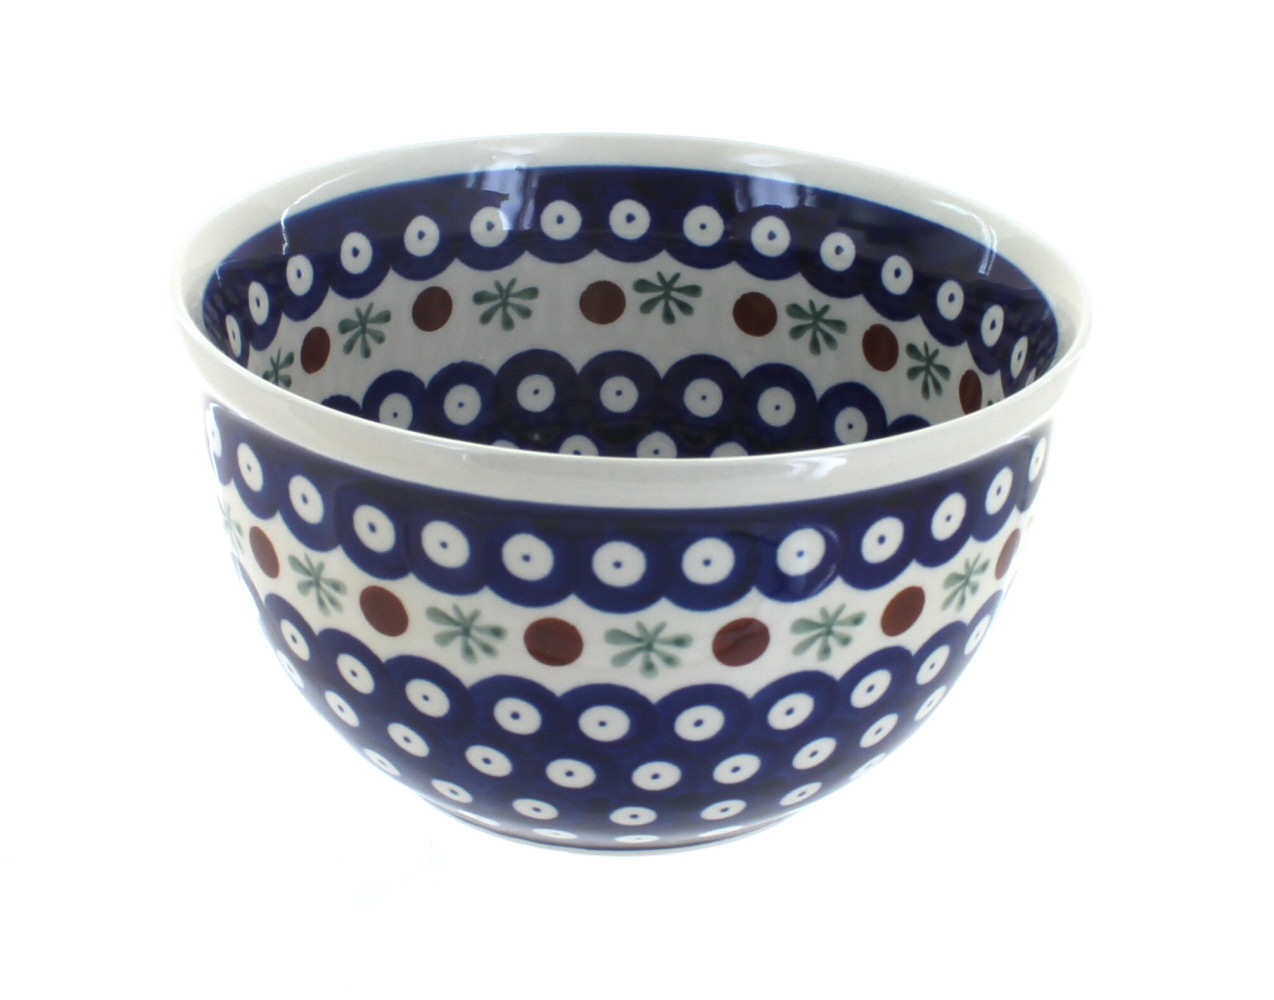 Zaklady Mosaic Flower Large Mixing Bowl Polish Pottery